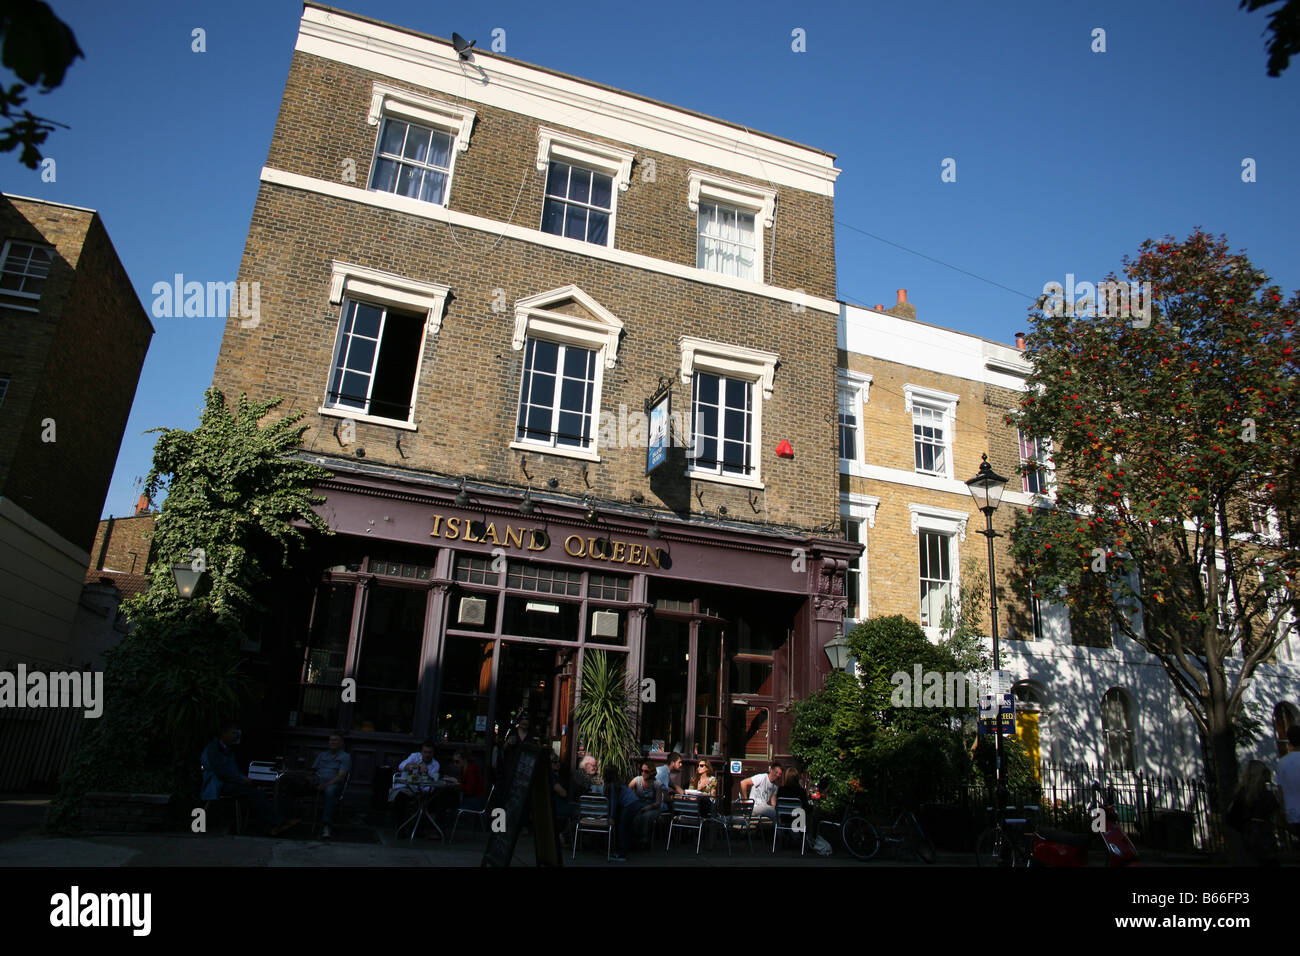 L'île Reine est l'un des pubs les plus célèbres d'Islington, Londres Banque D'Images